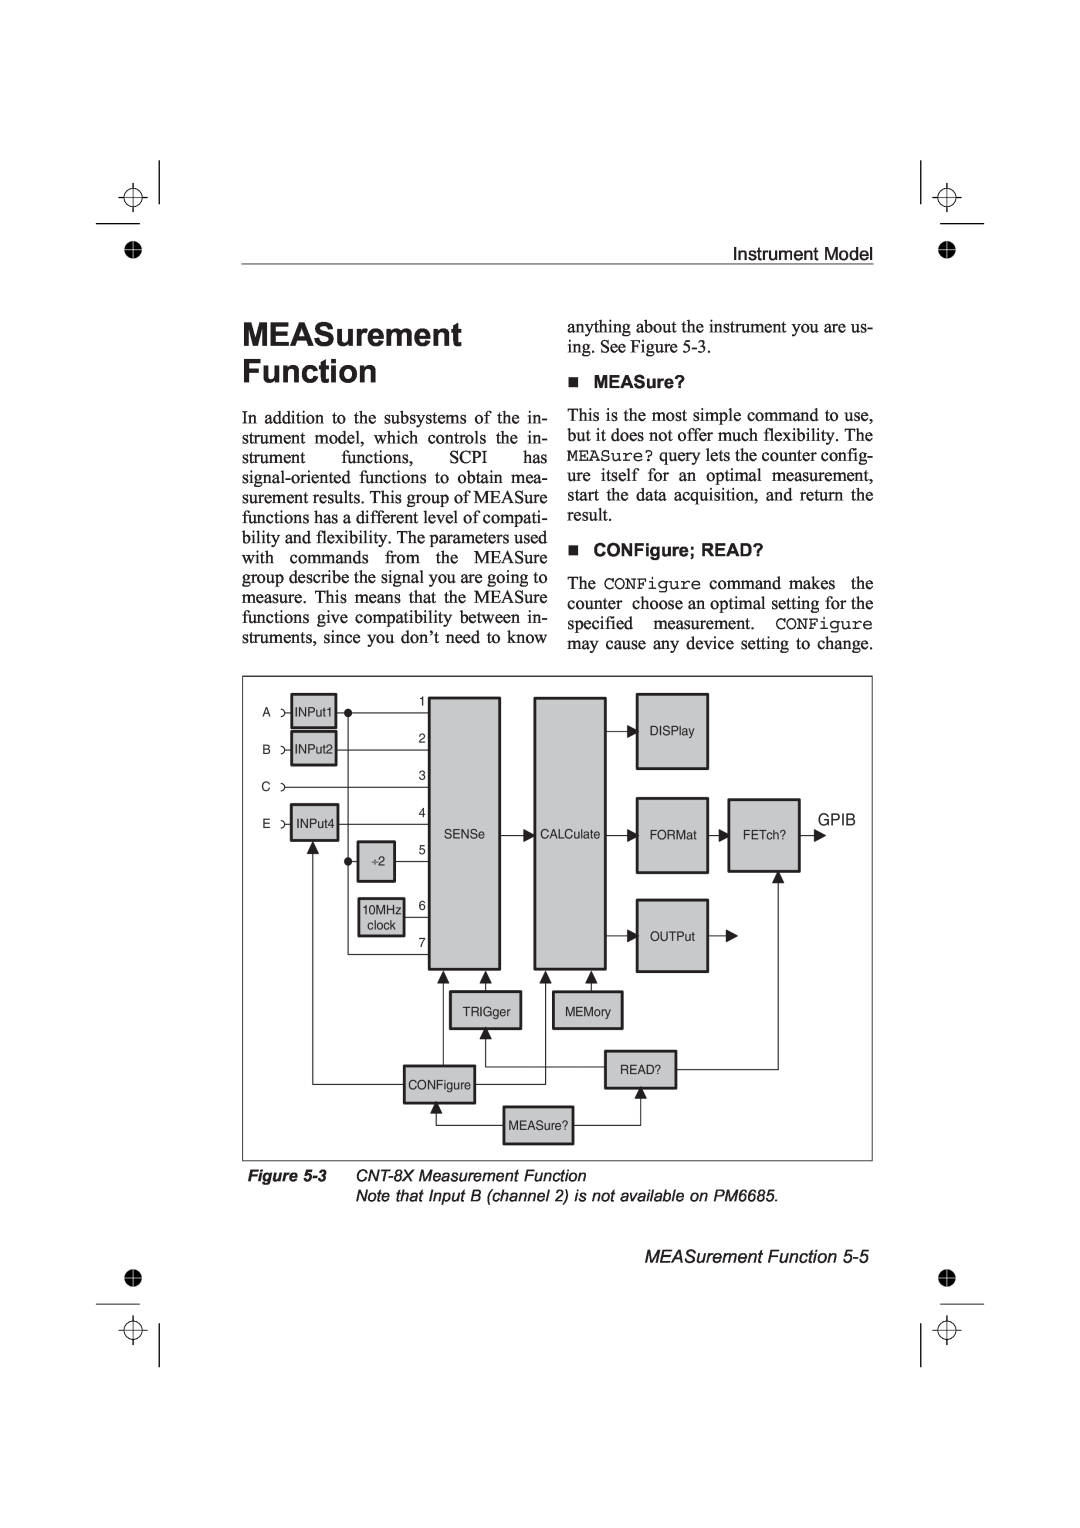 Fluke PM6681R, PM6685R manual MEASurement Function, MEASure?, CONFigure READ? 